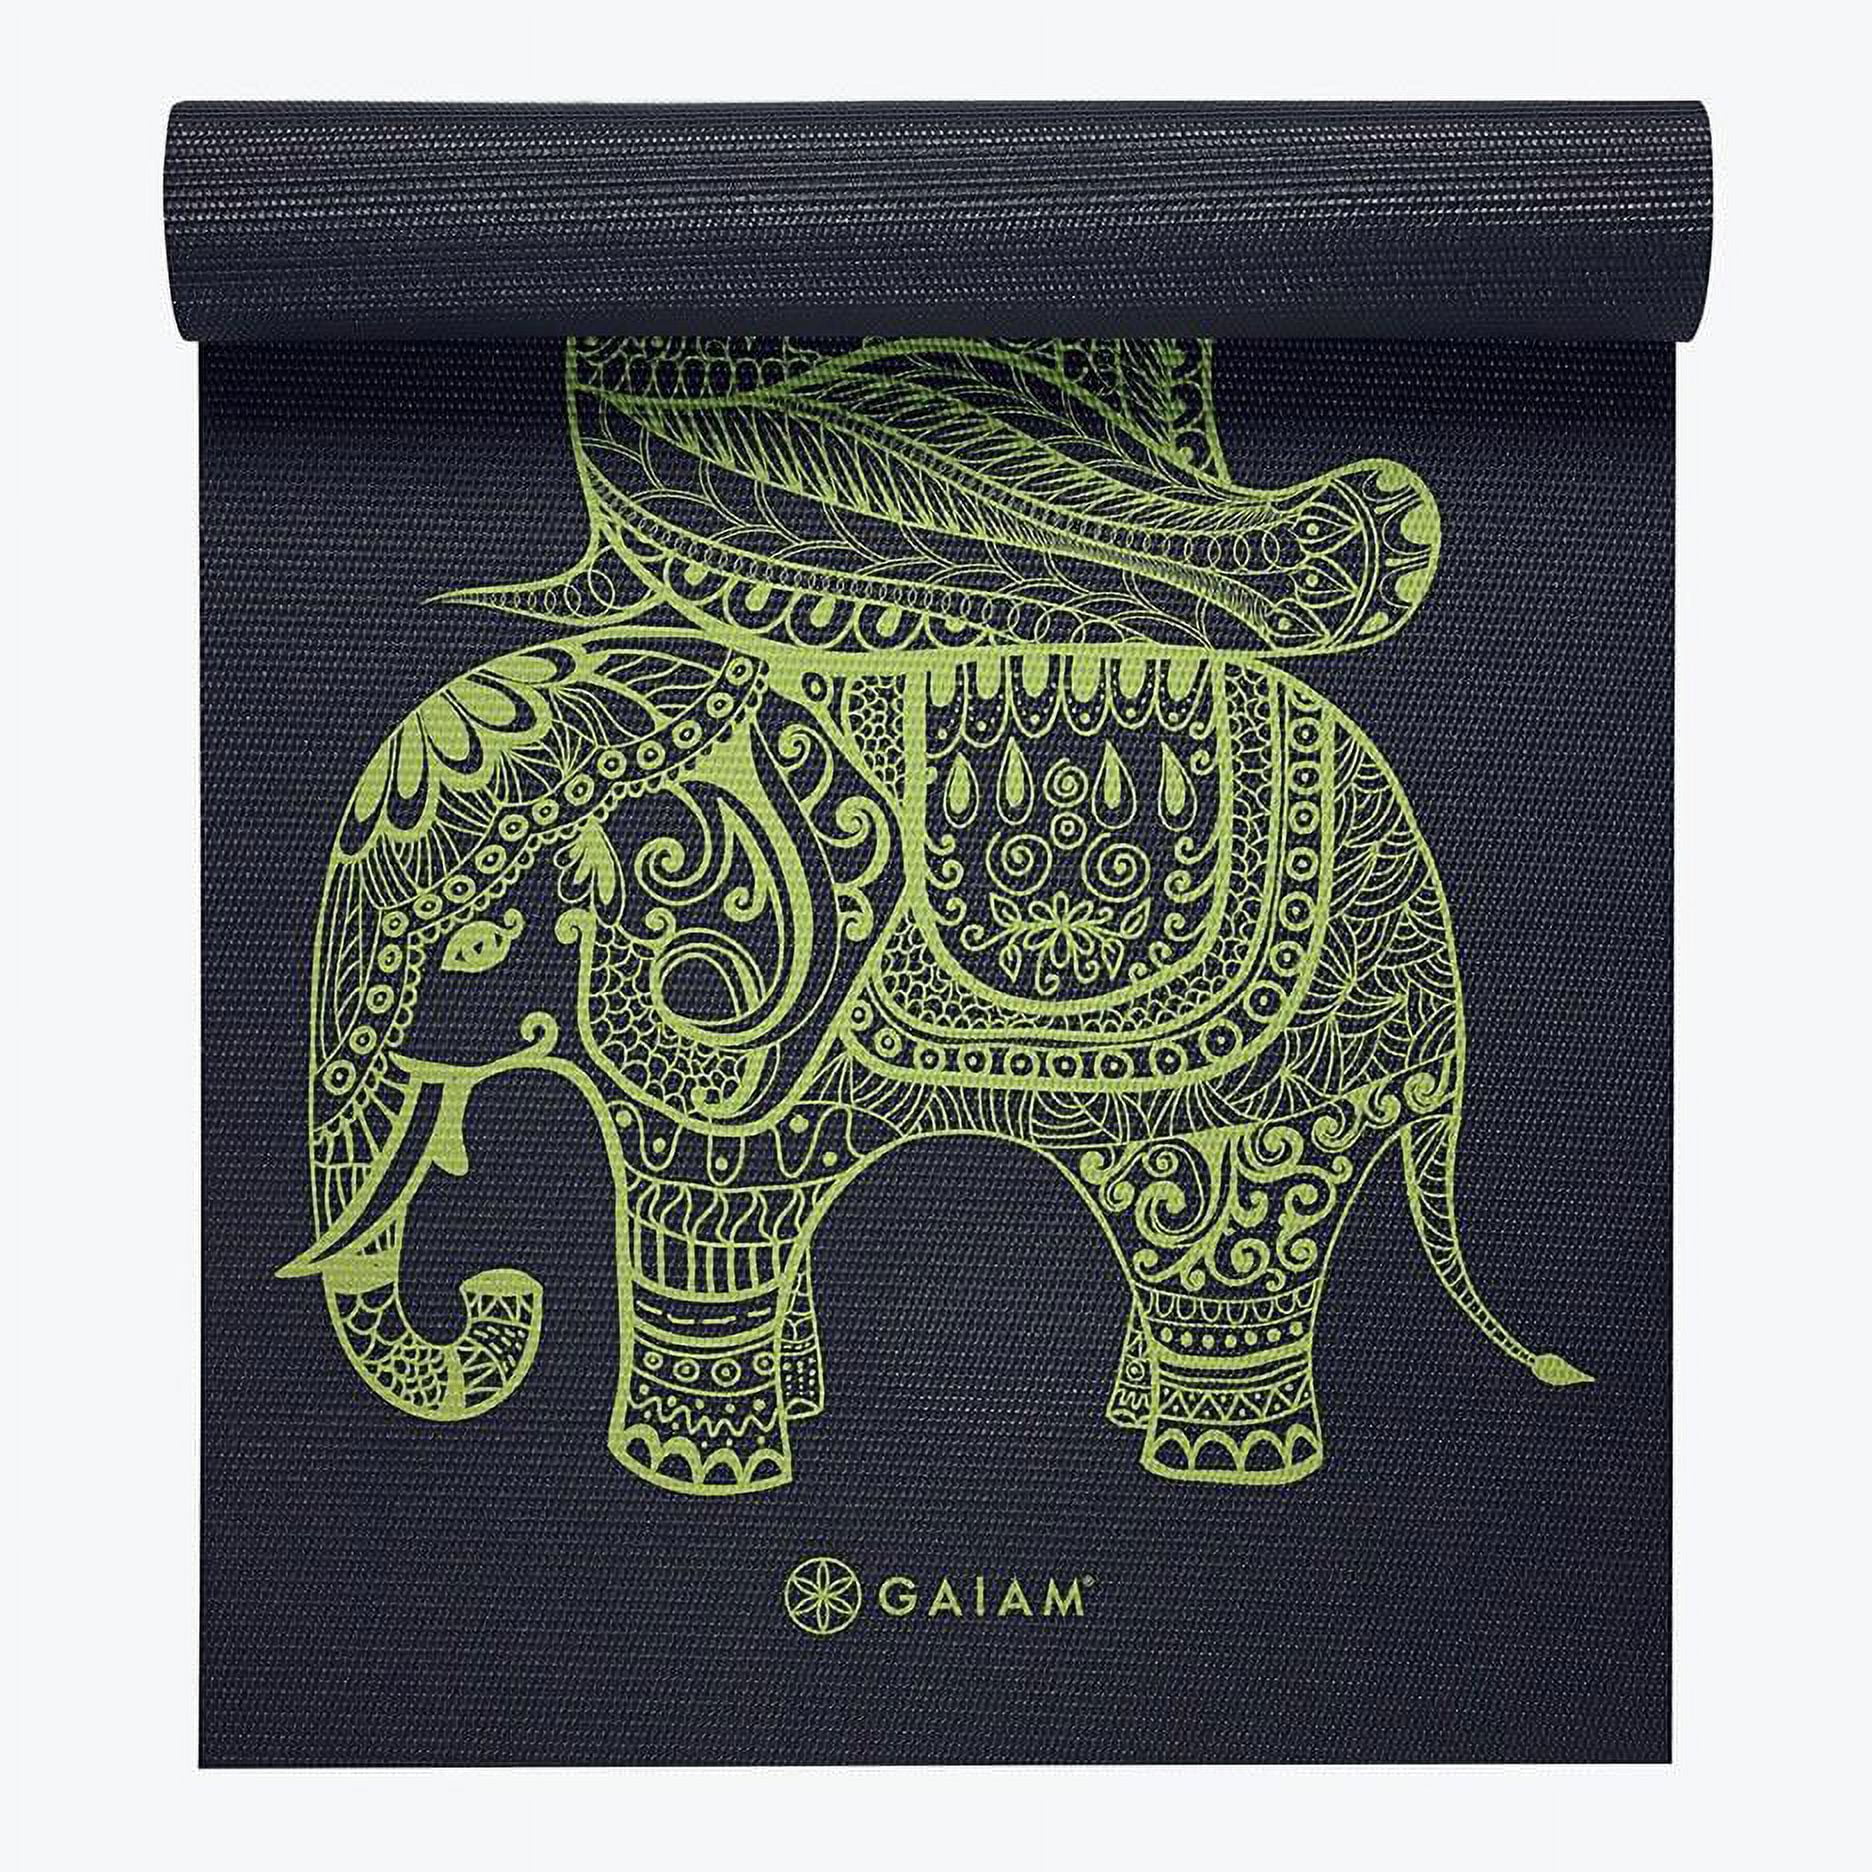 Gaiam Yoga Premium Print Yoga Mat - 5 mm, 68x24” - Navajo print